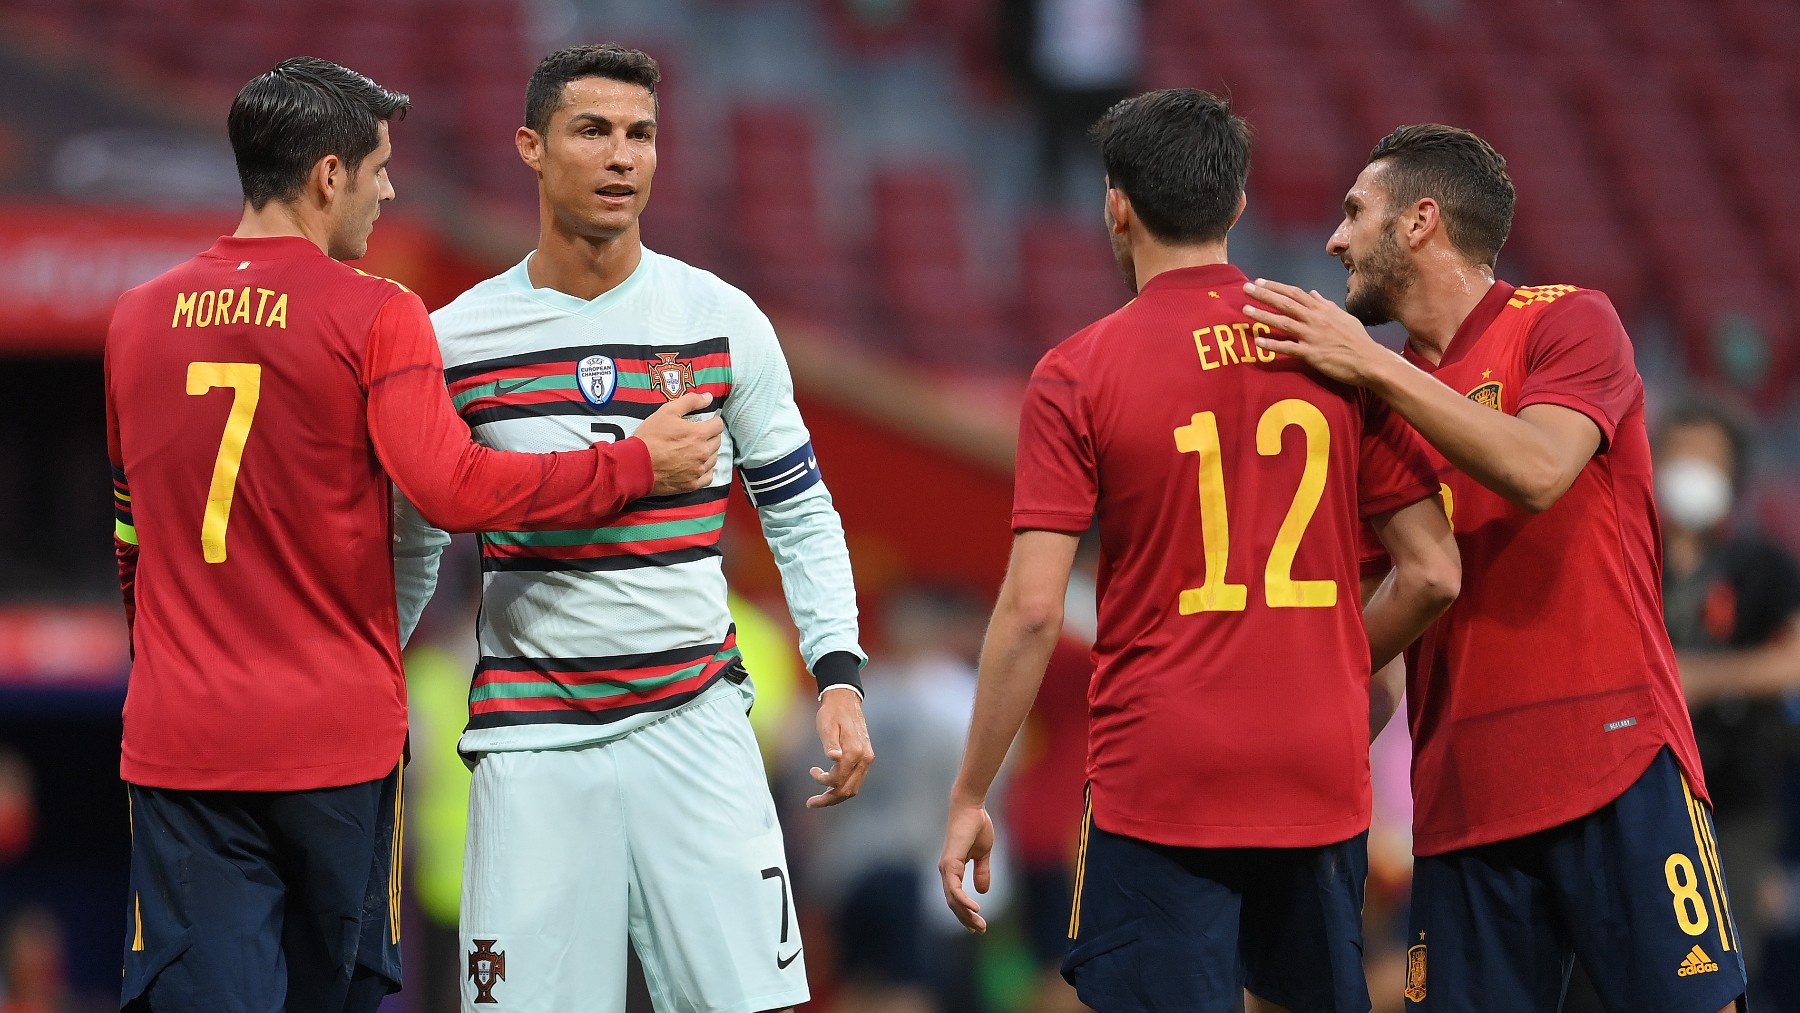 Morata, Eric García y Koke charlan con Cristiano durante el España-Portugal disputado en el Wanda. (Getty)